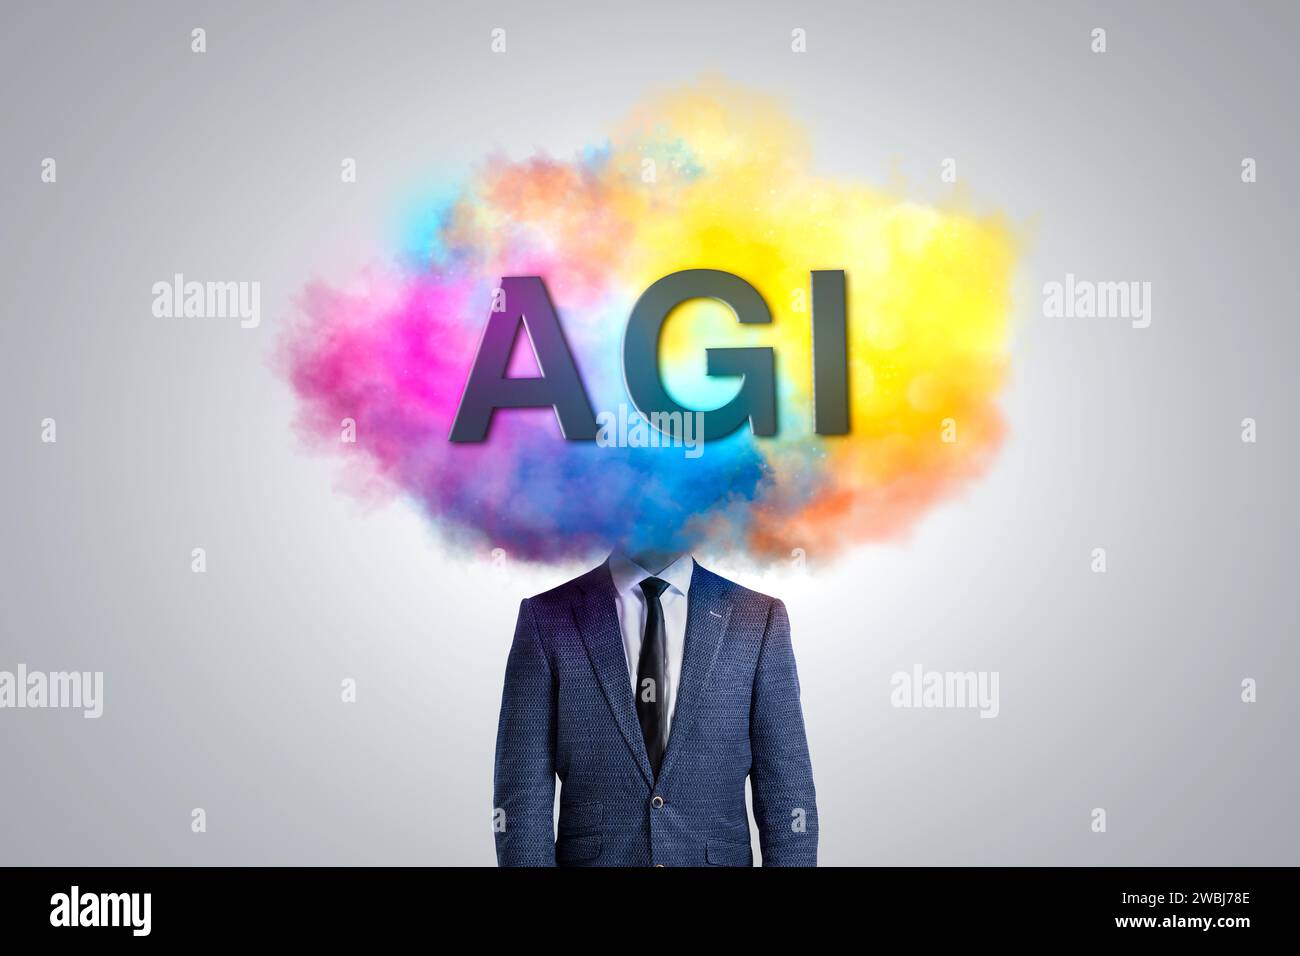 Tête d'une personne couverte d'un nuage coloré étiqueté AGI Banque D'Images